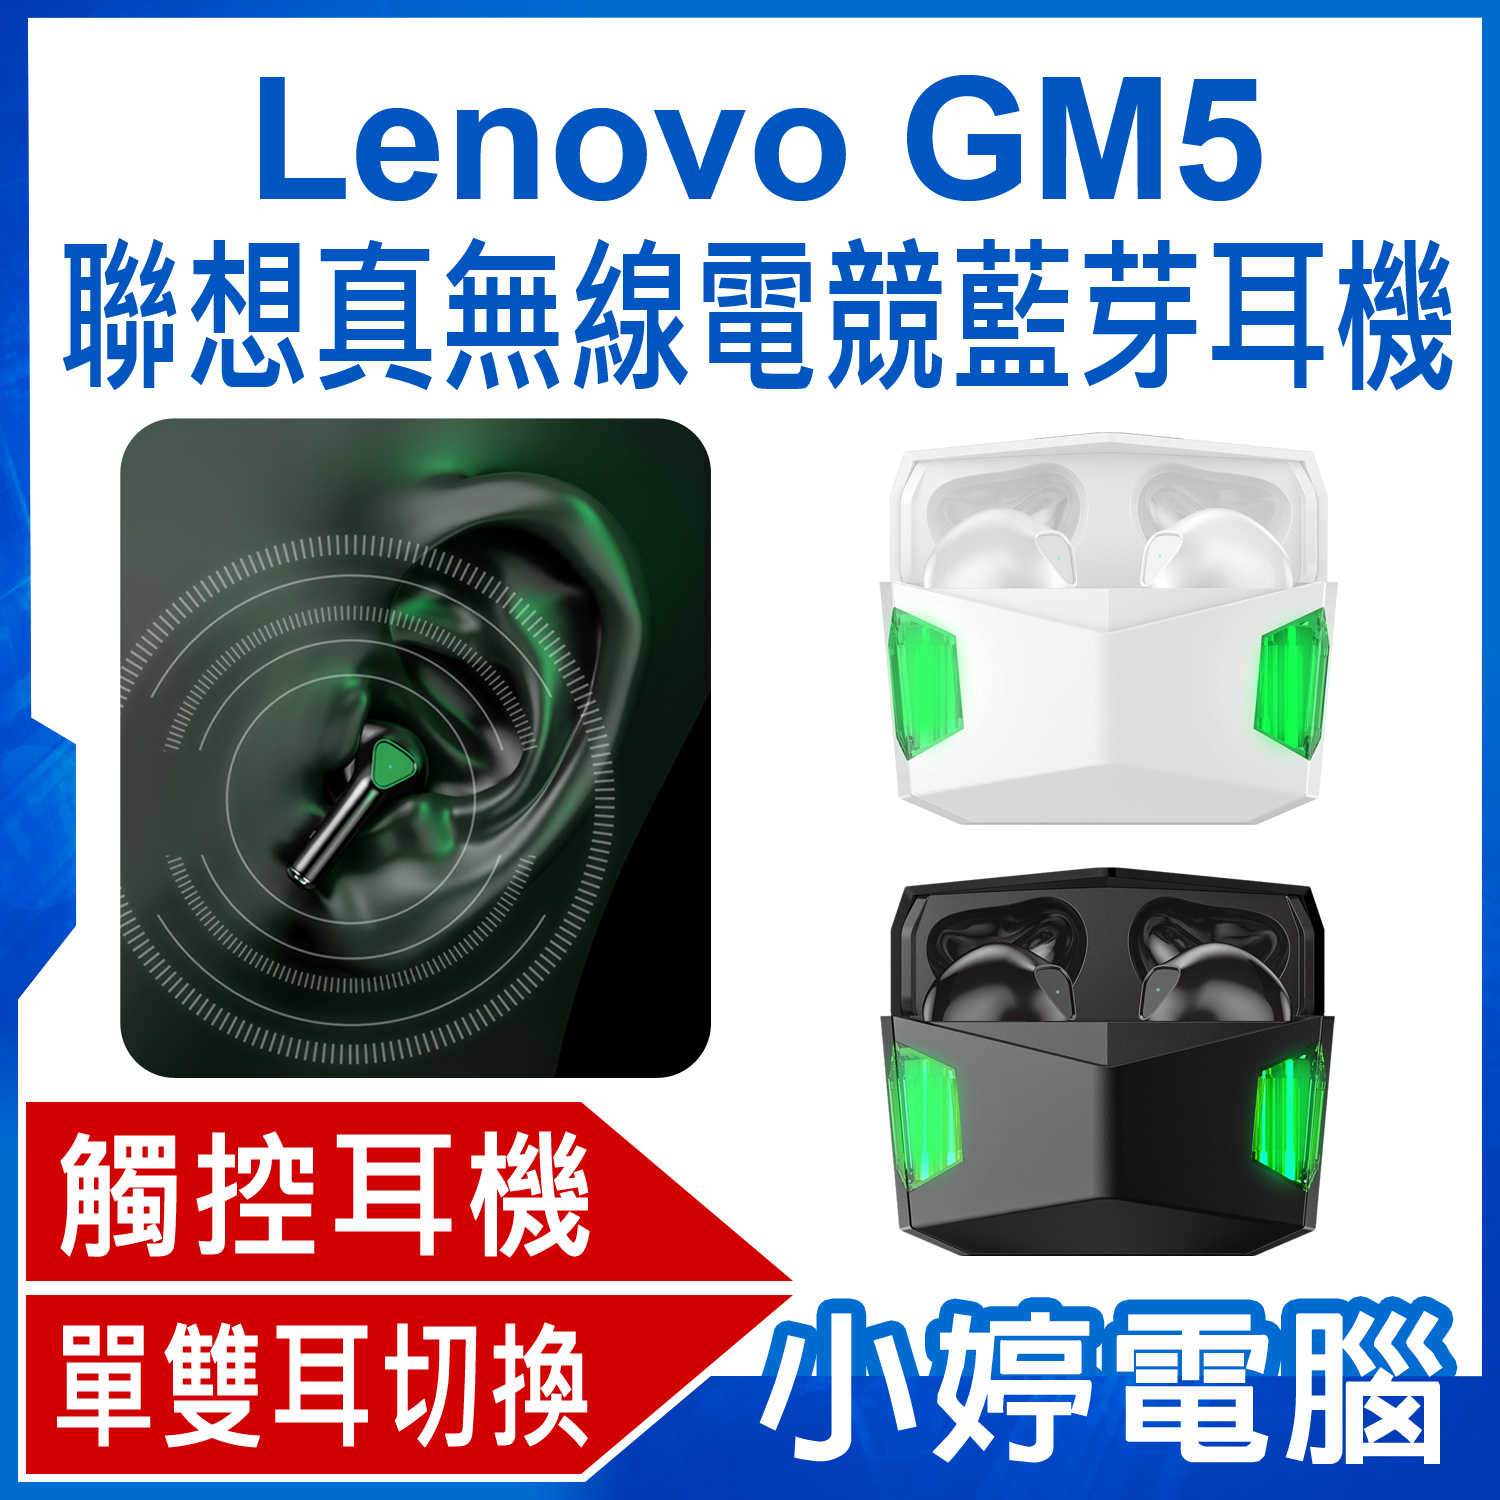 【小婷電腦】Lenovo GM5 聯想真無線電競藍芽耳機 平耳式耳機 單雙耳切換 震撼音質 智慧觸控